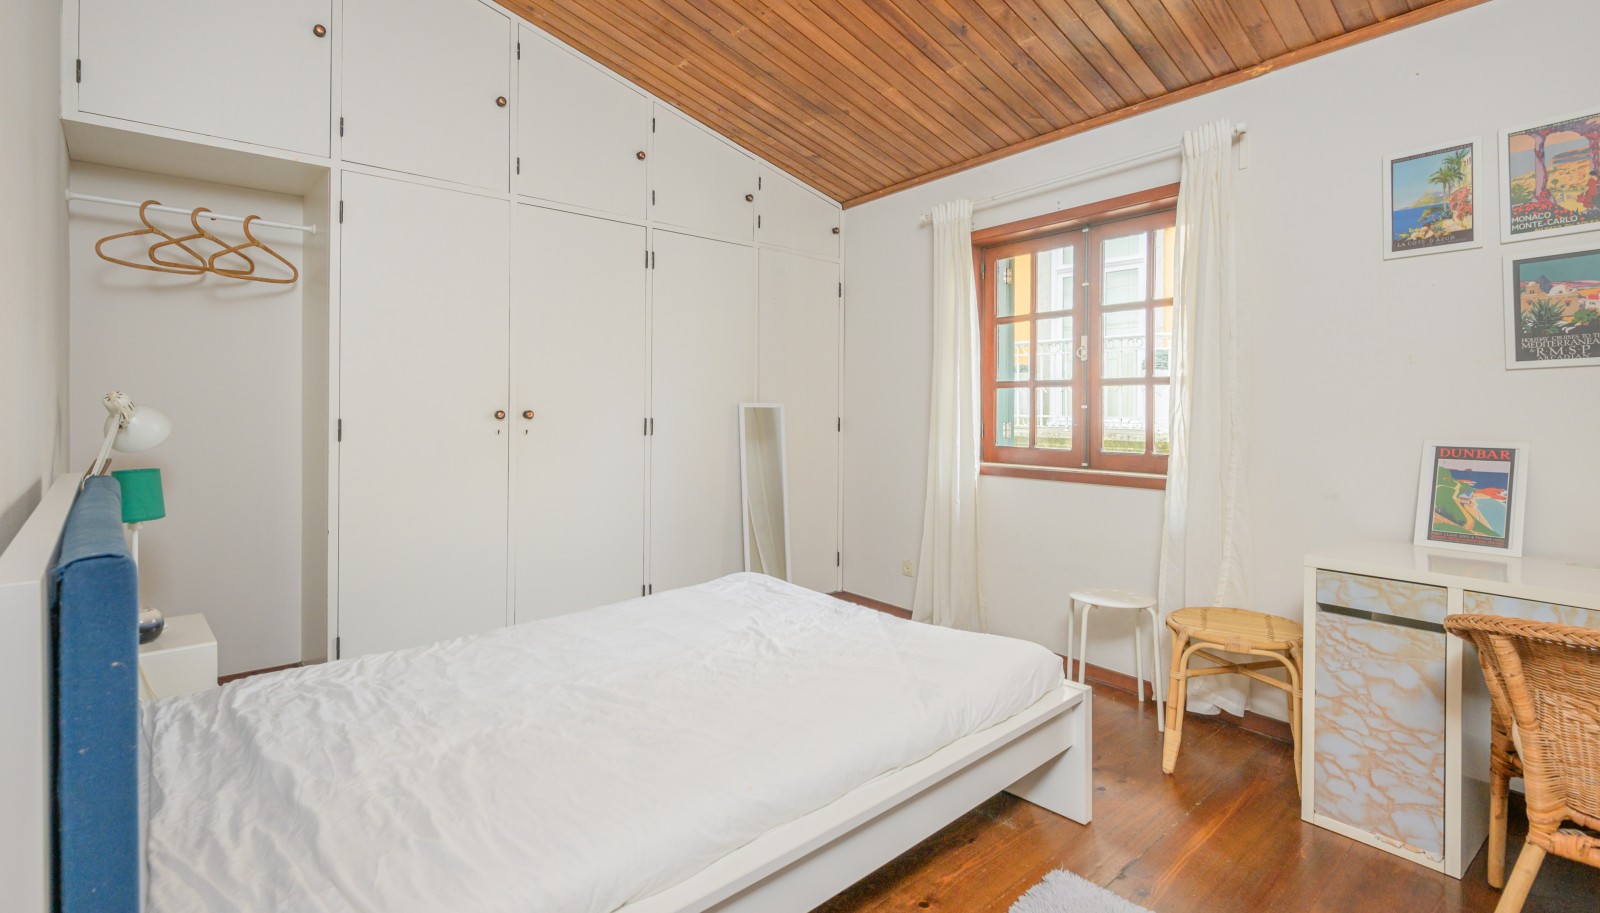 2 bedroom villa with views over the Douro river, in Foz Velha, Porto _243572